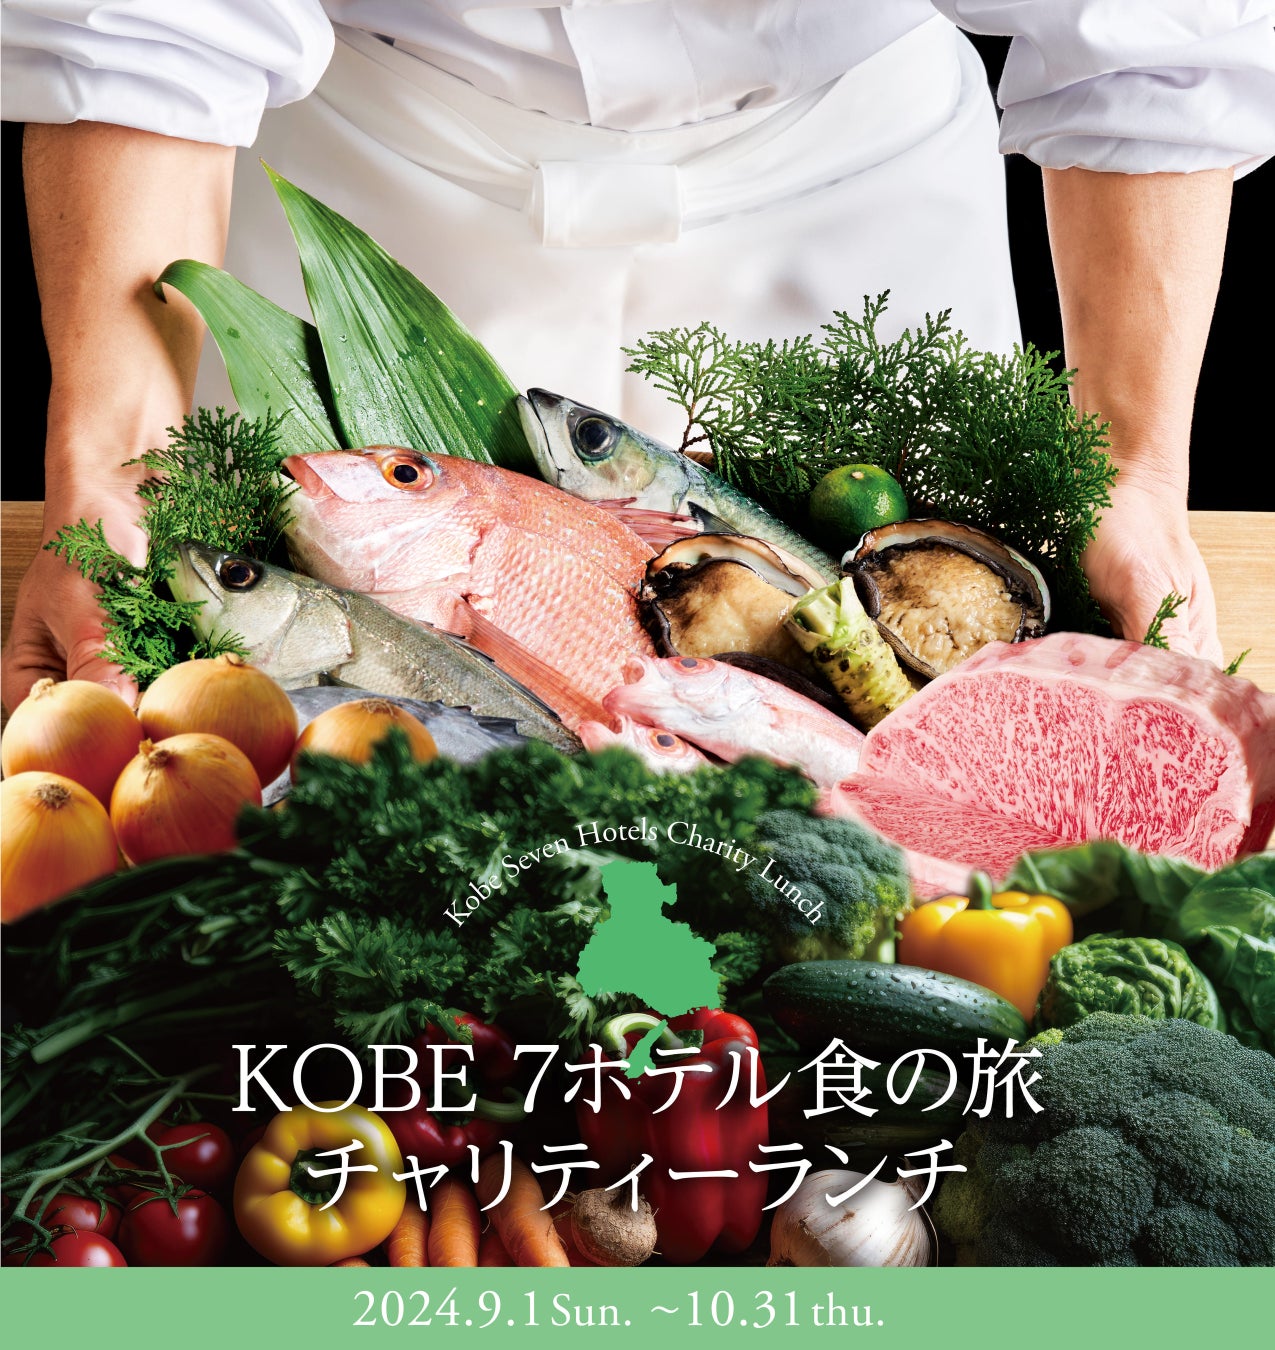 「兵庫デスティネーションキャンペーン」アフターキャンペーン参画イベント「KOBE 7ホテル食の旅 チャリティーランチ2024」開催